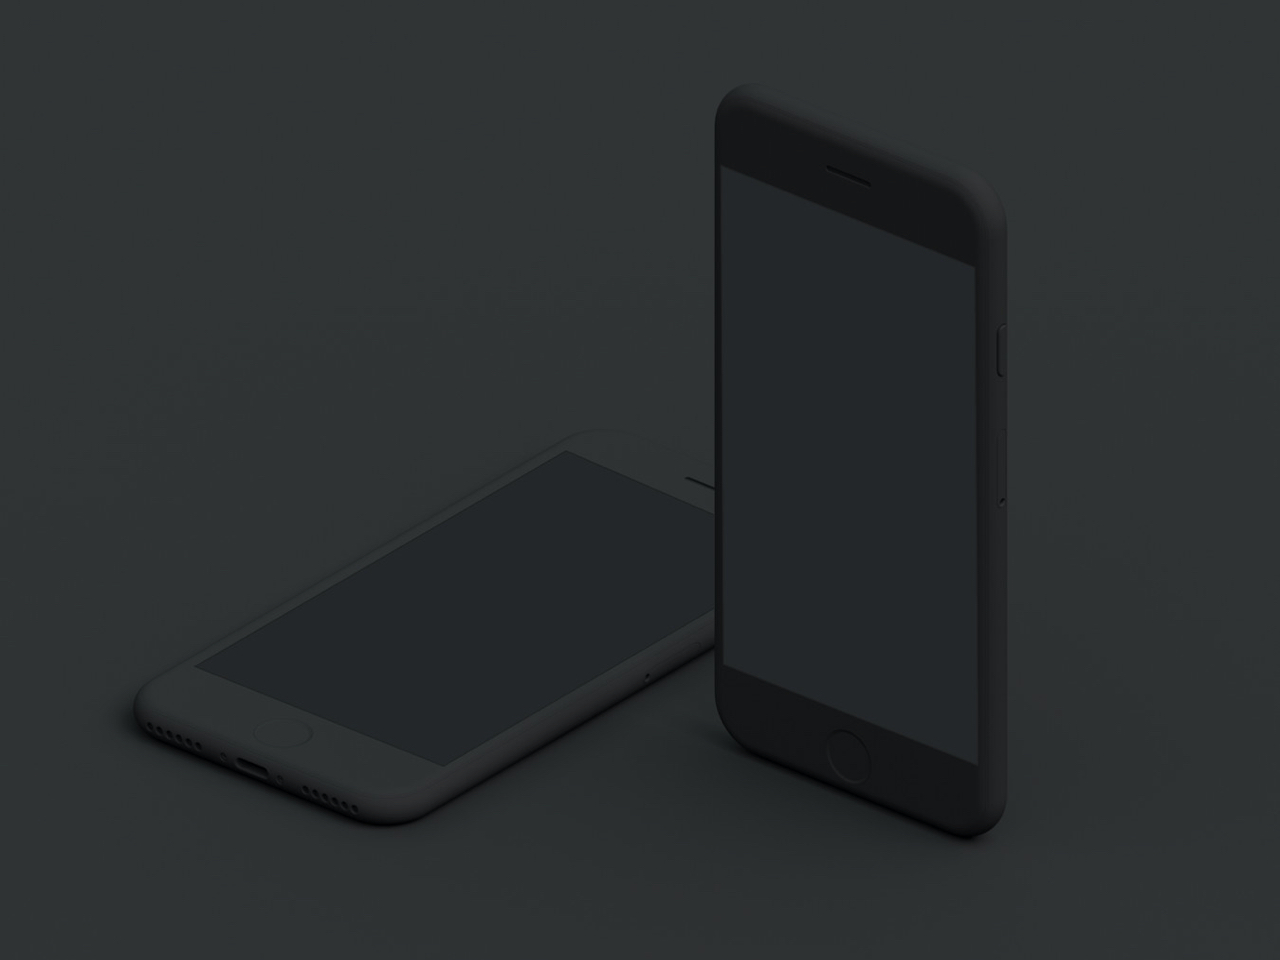 8款黑色iphone样机模型mockup .psd素材